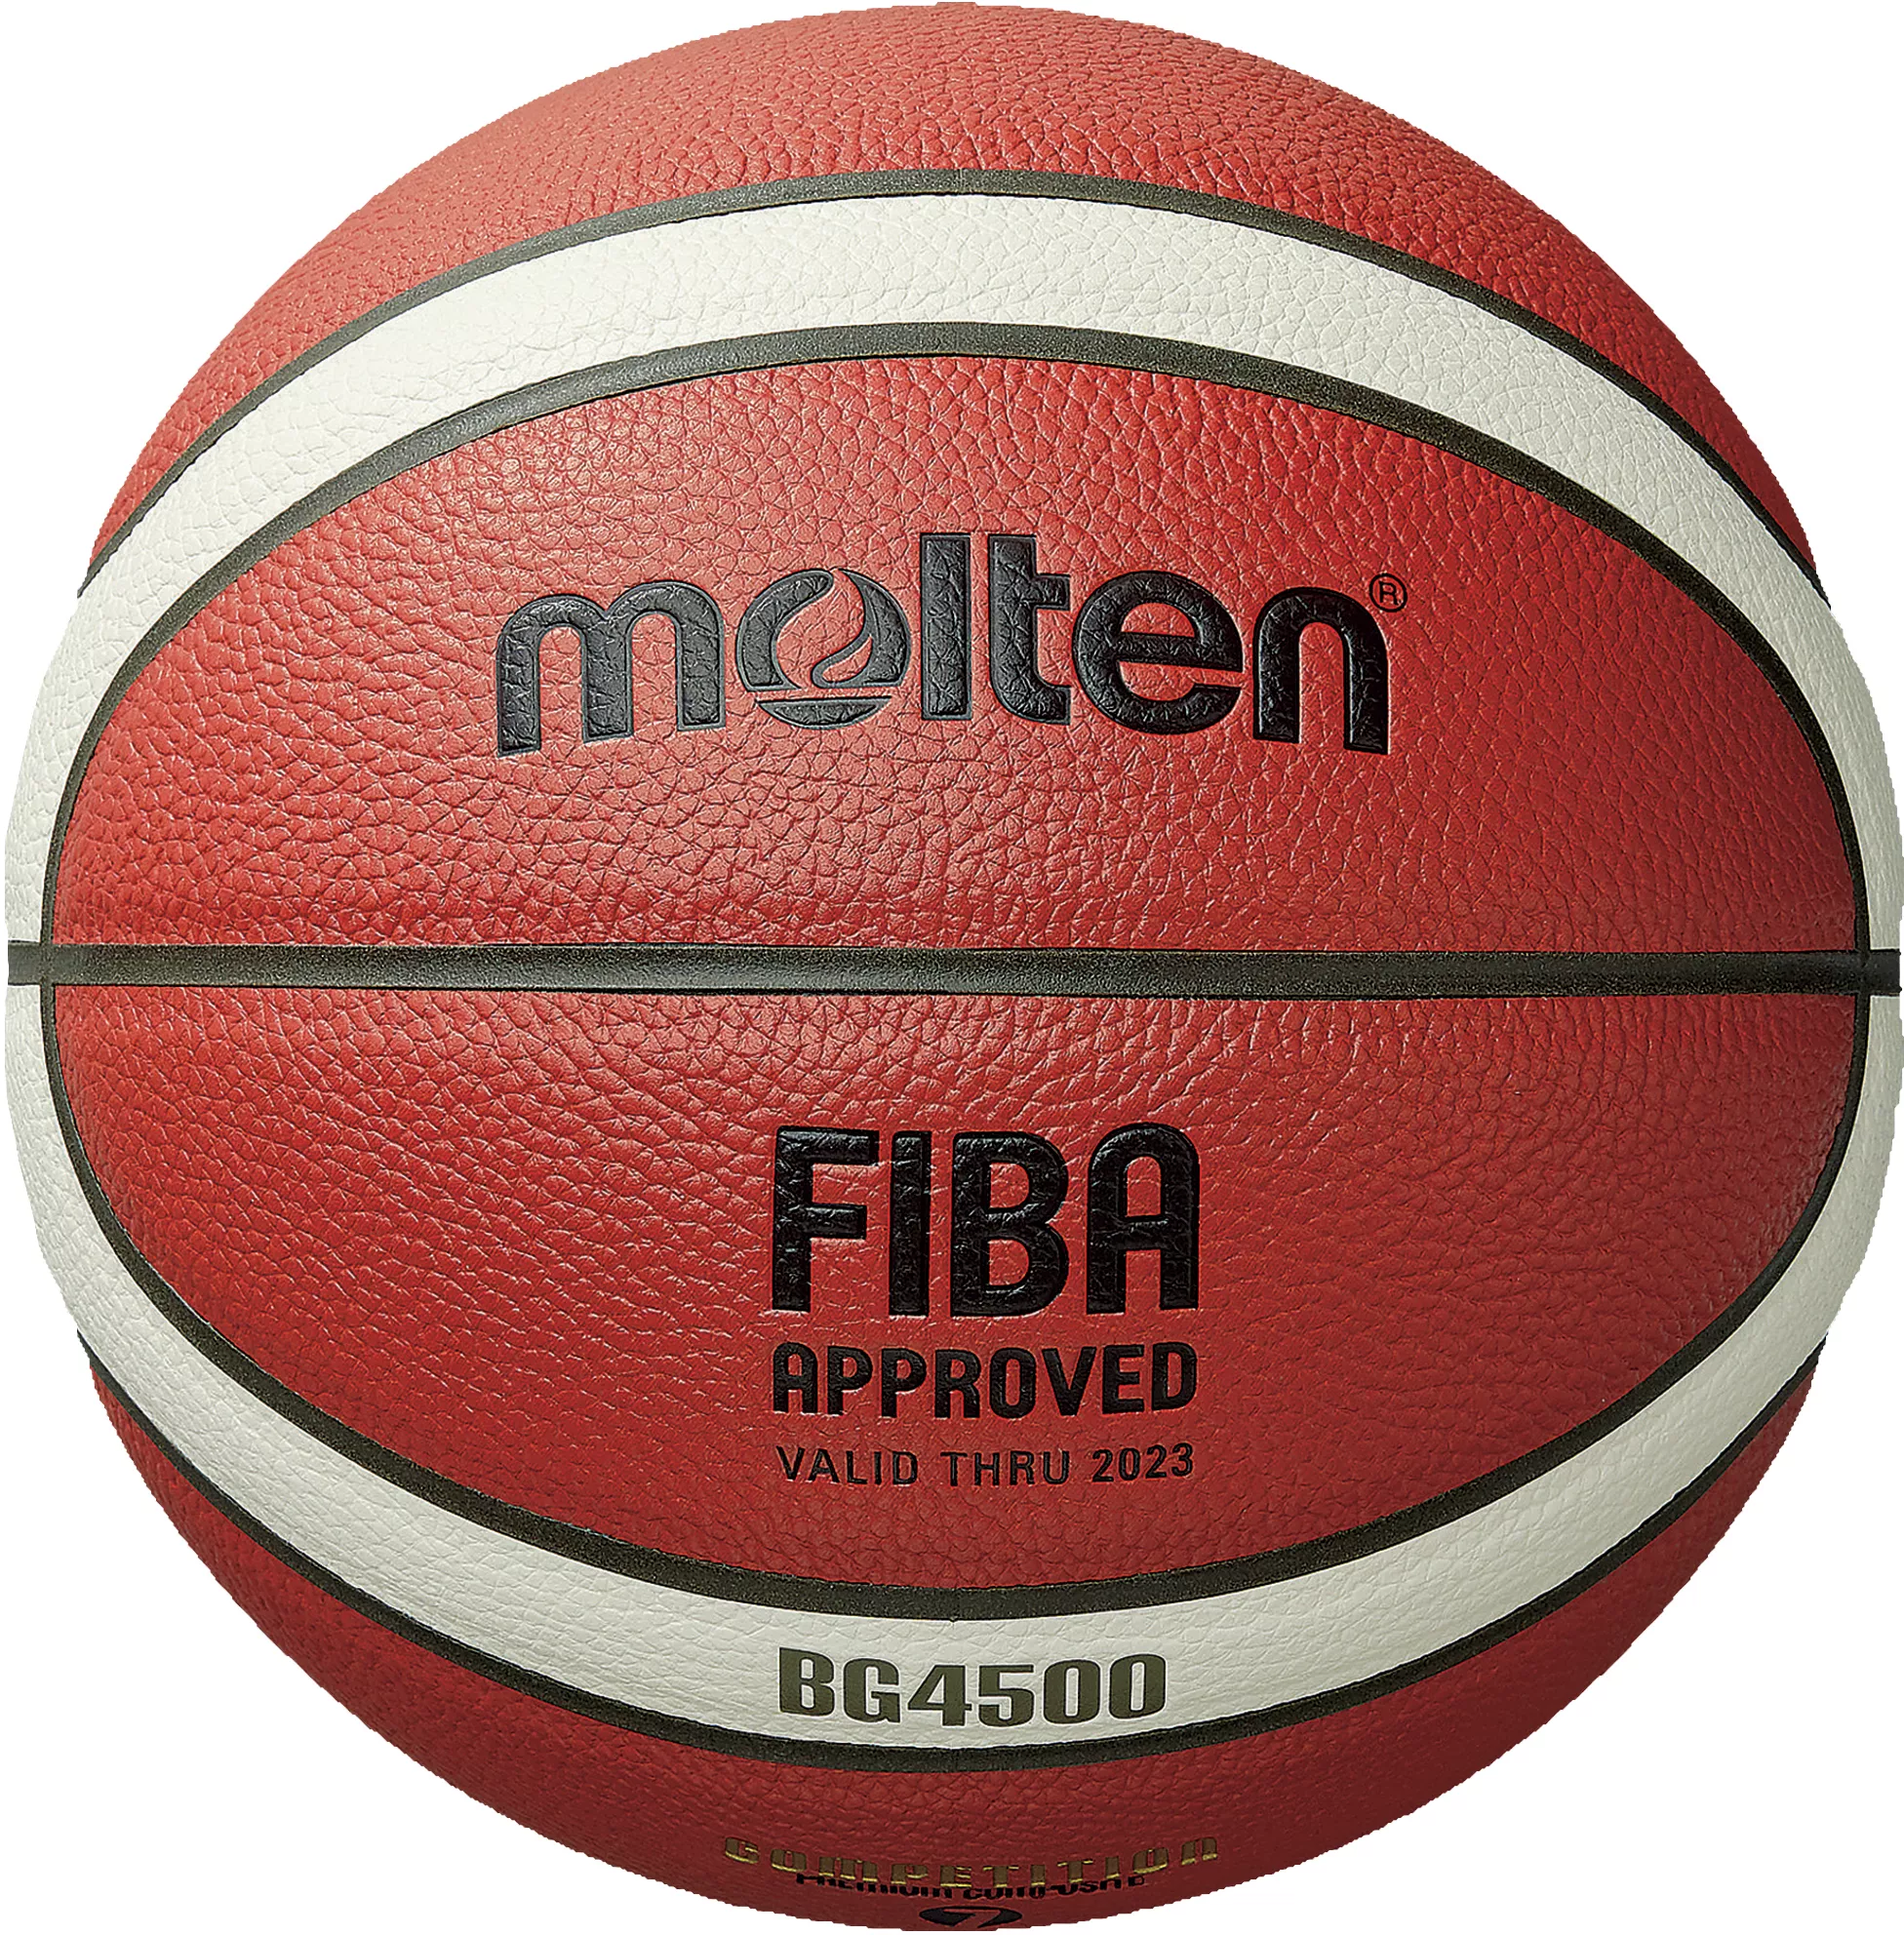 Basketball Equipment List